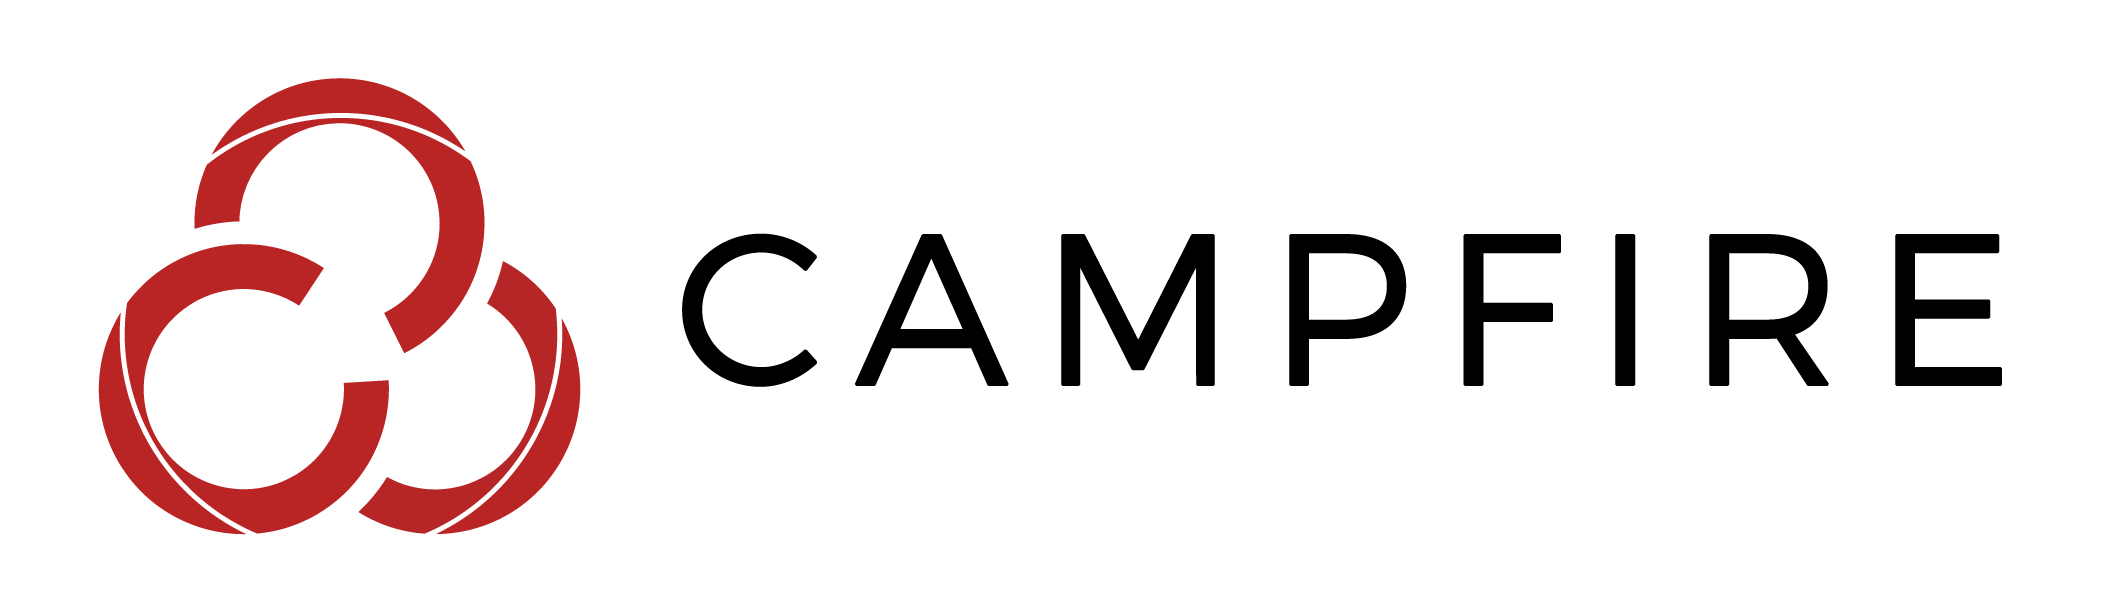 Campfire Logo - Campfire Logo White